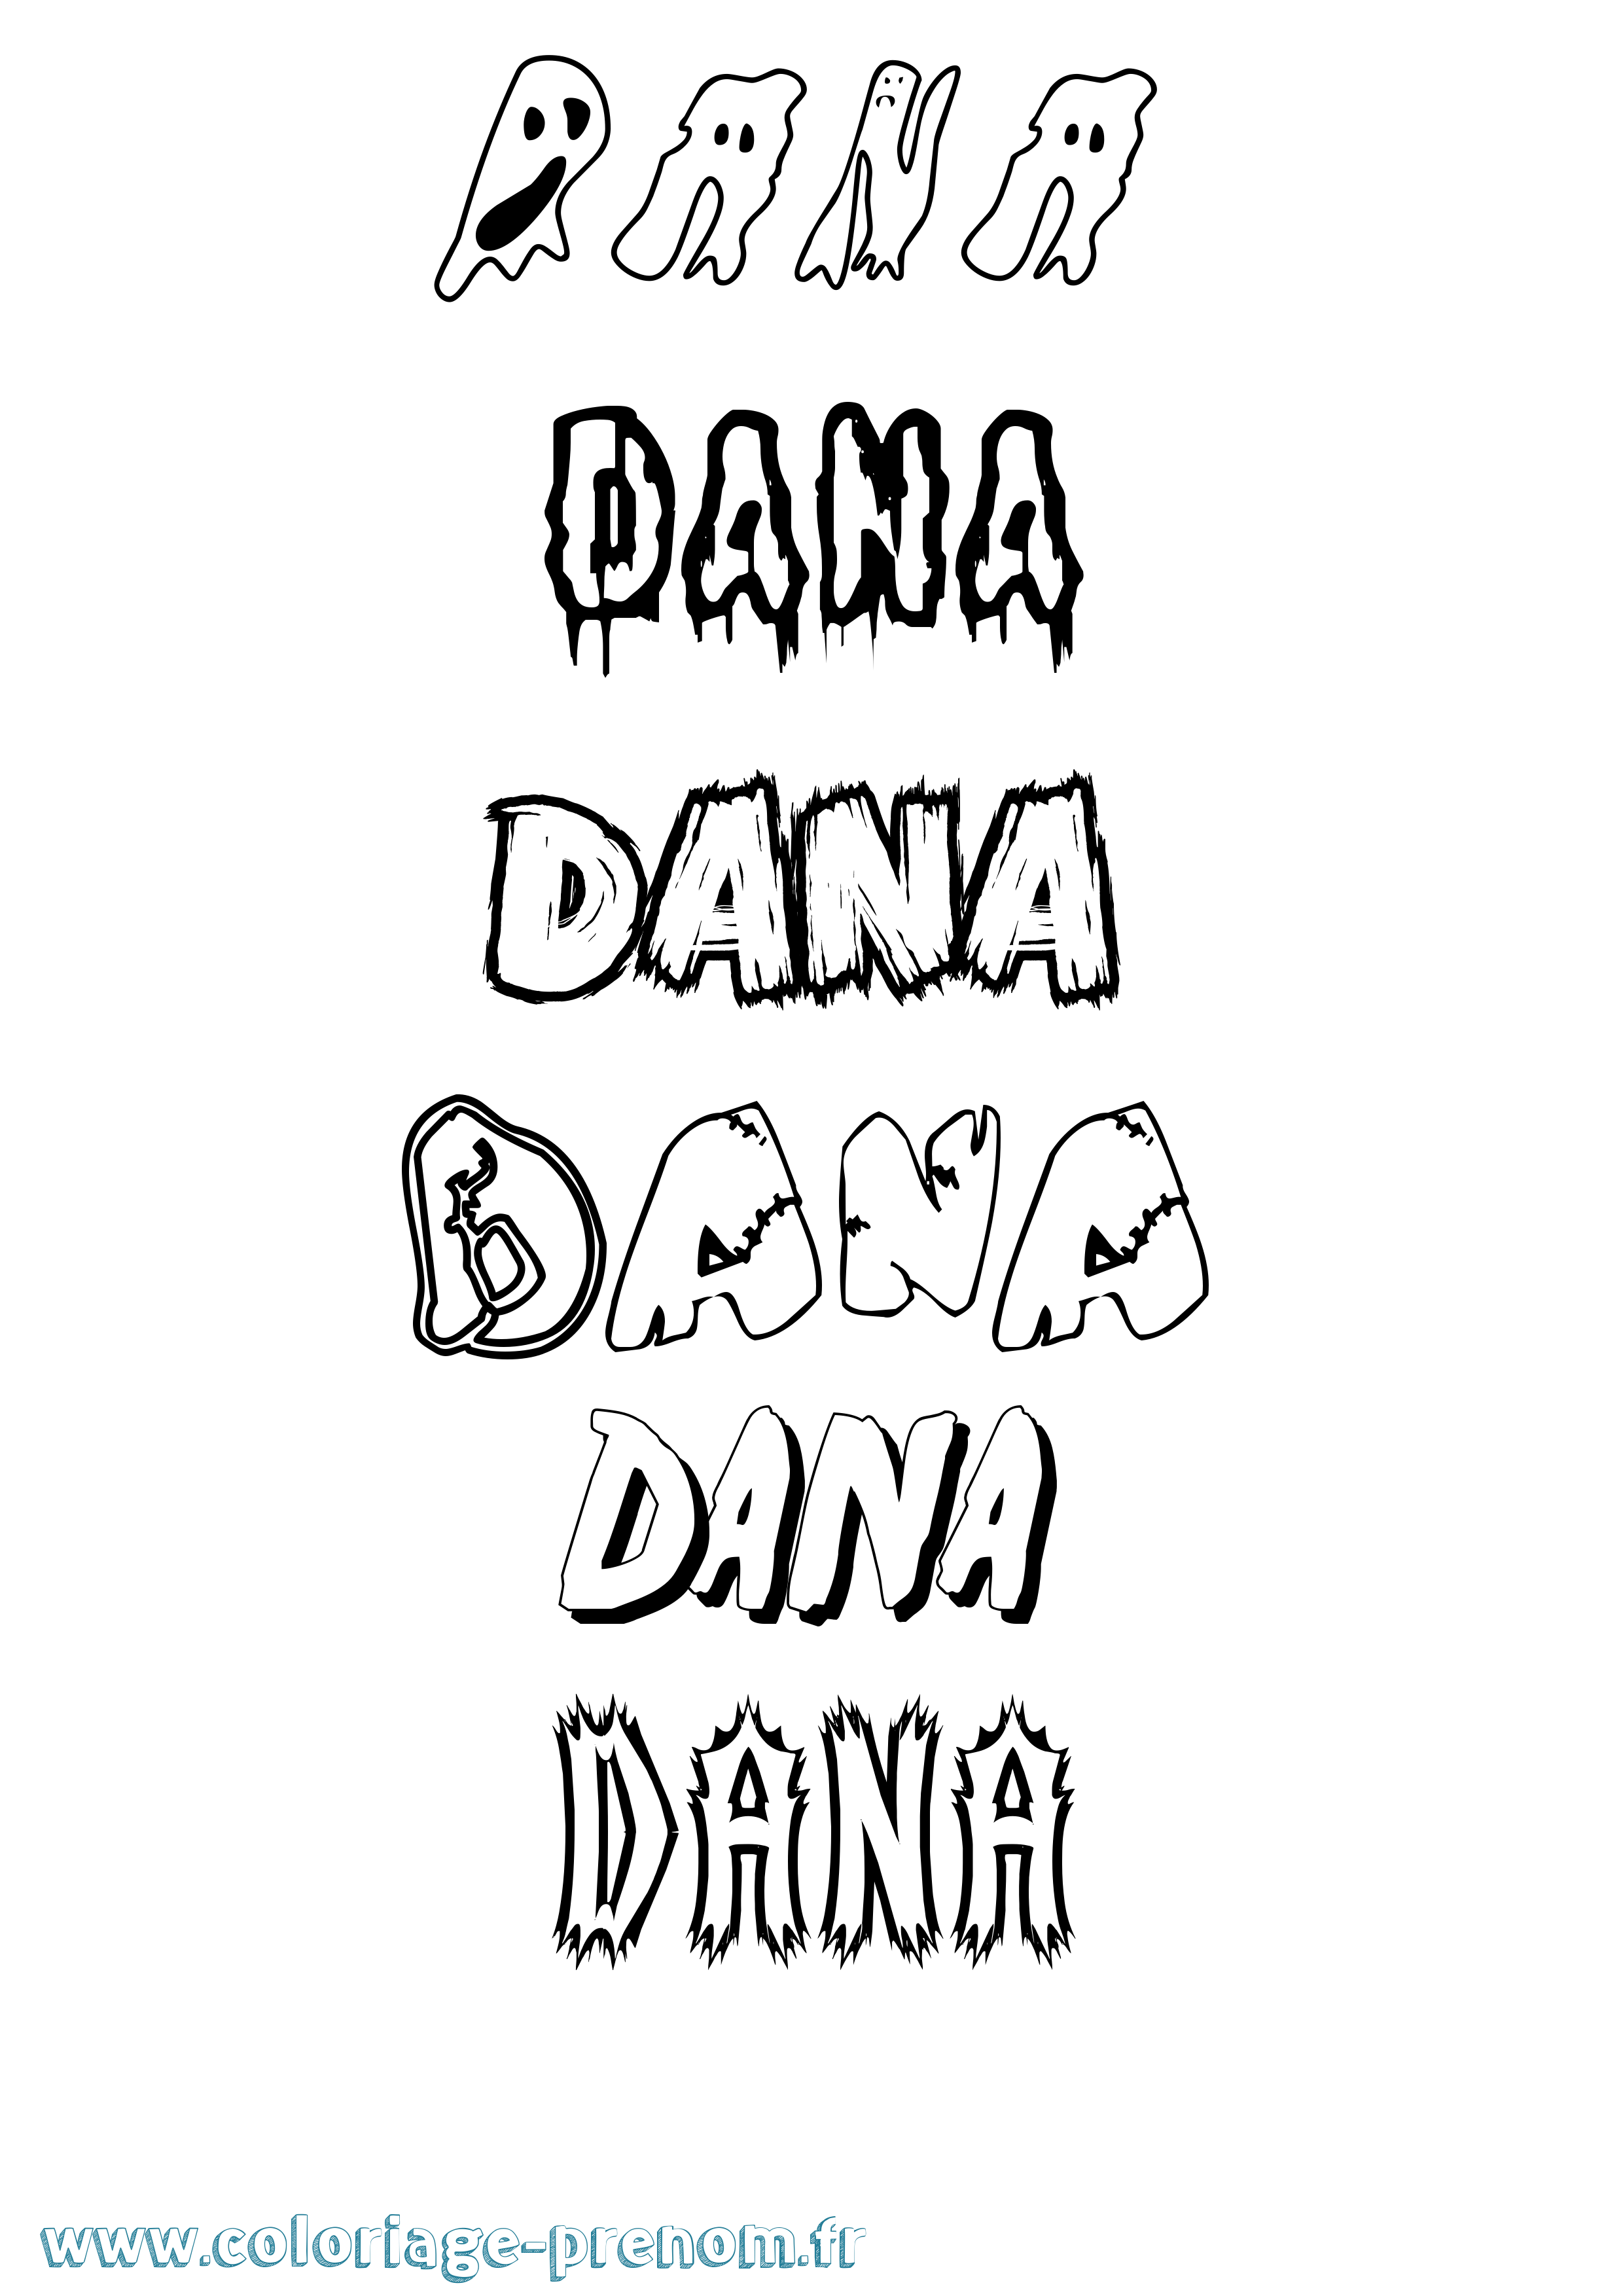 Coloriage prénom Dana